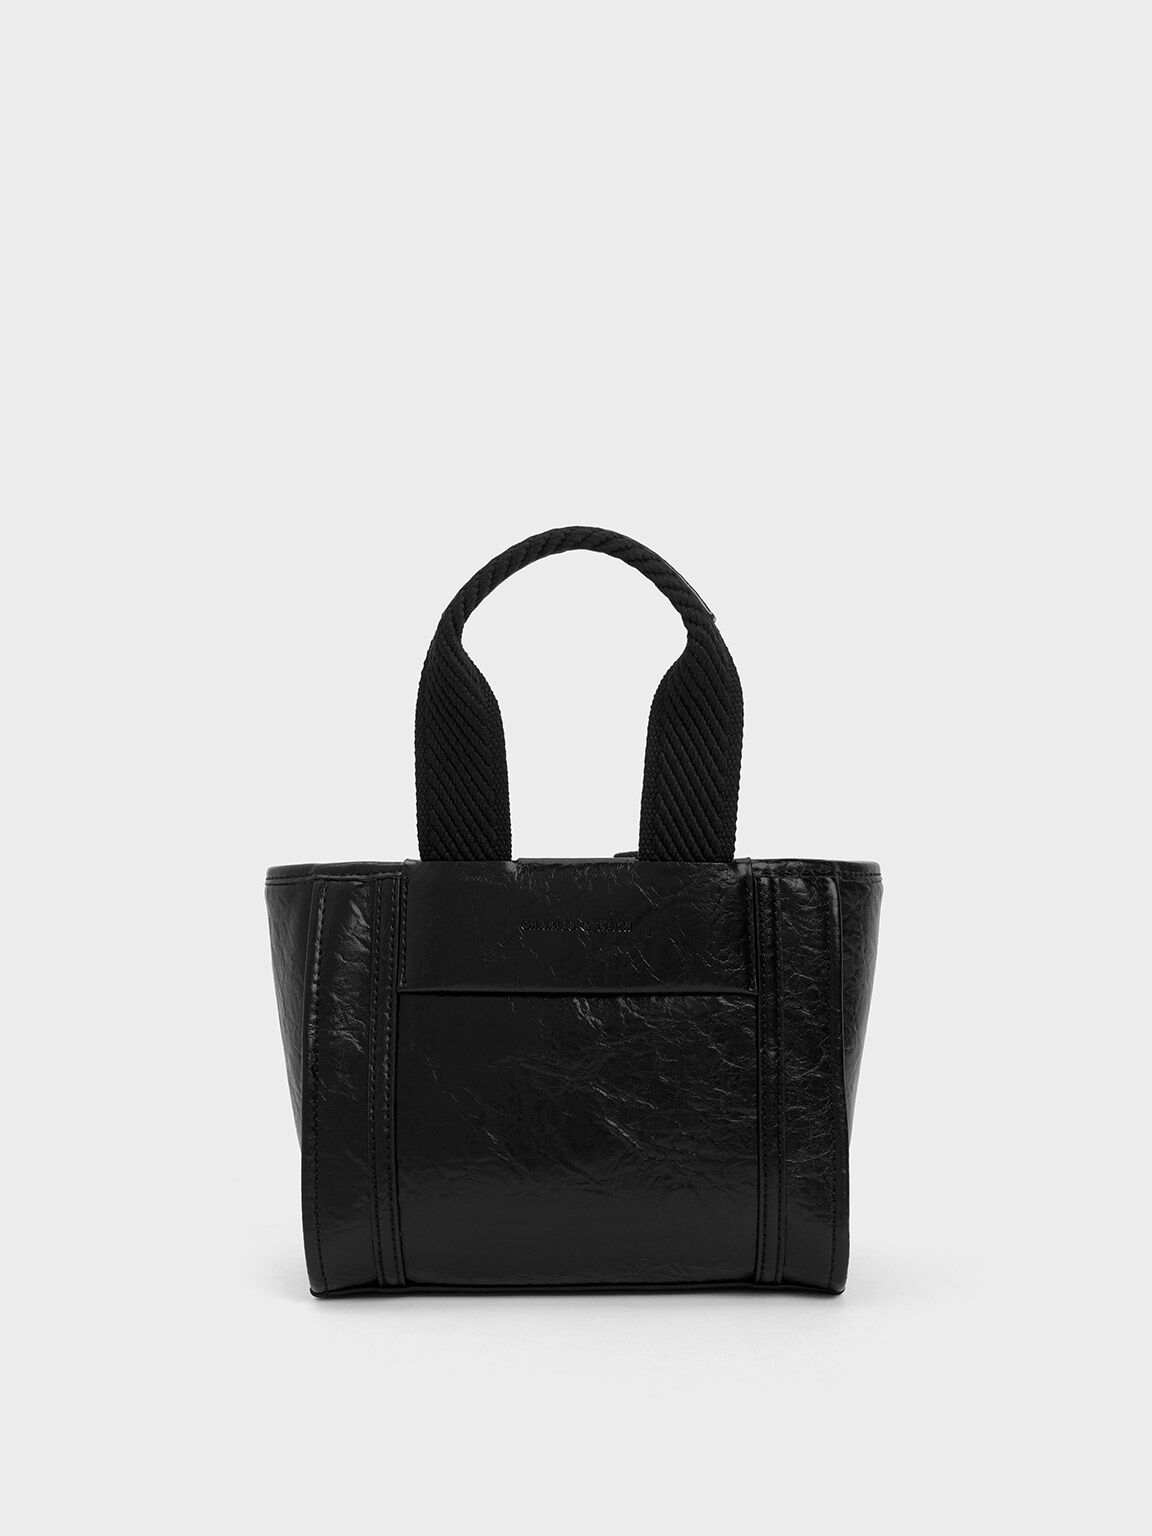 Hobo Shoulder Bag - Black Crinkle